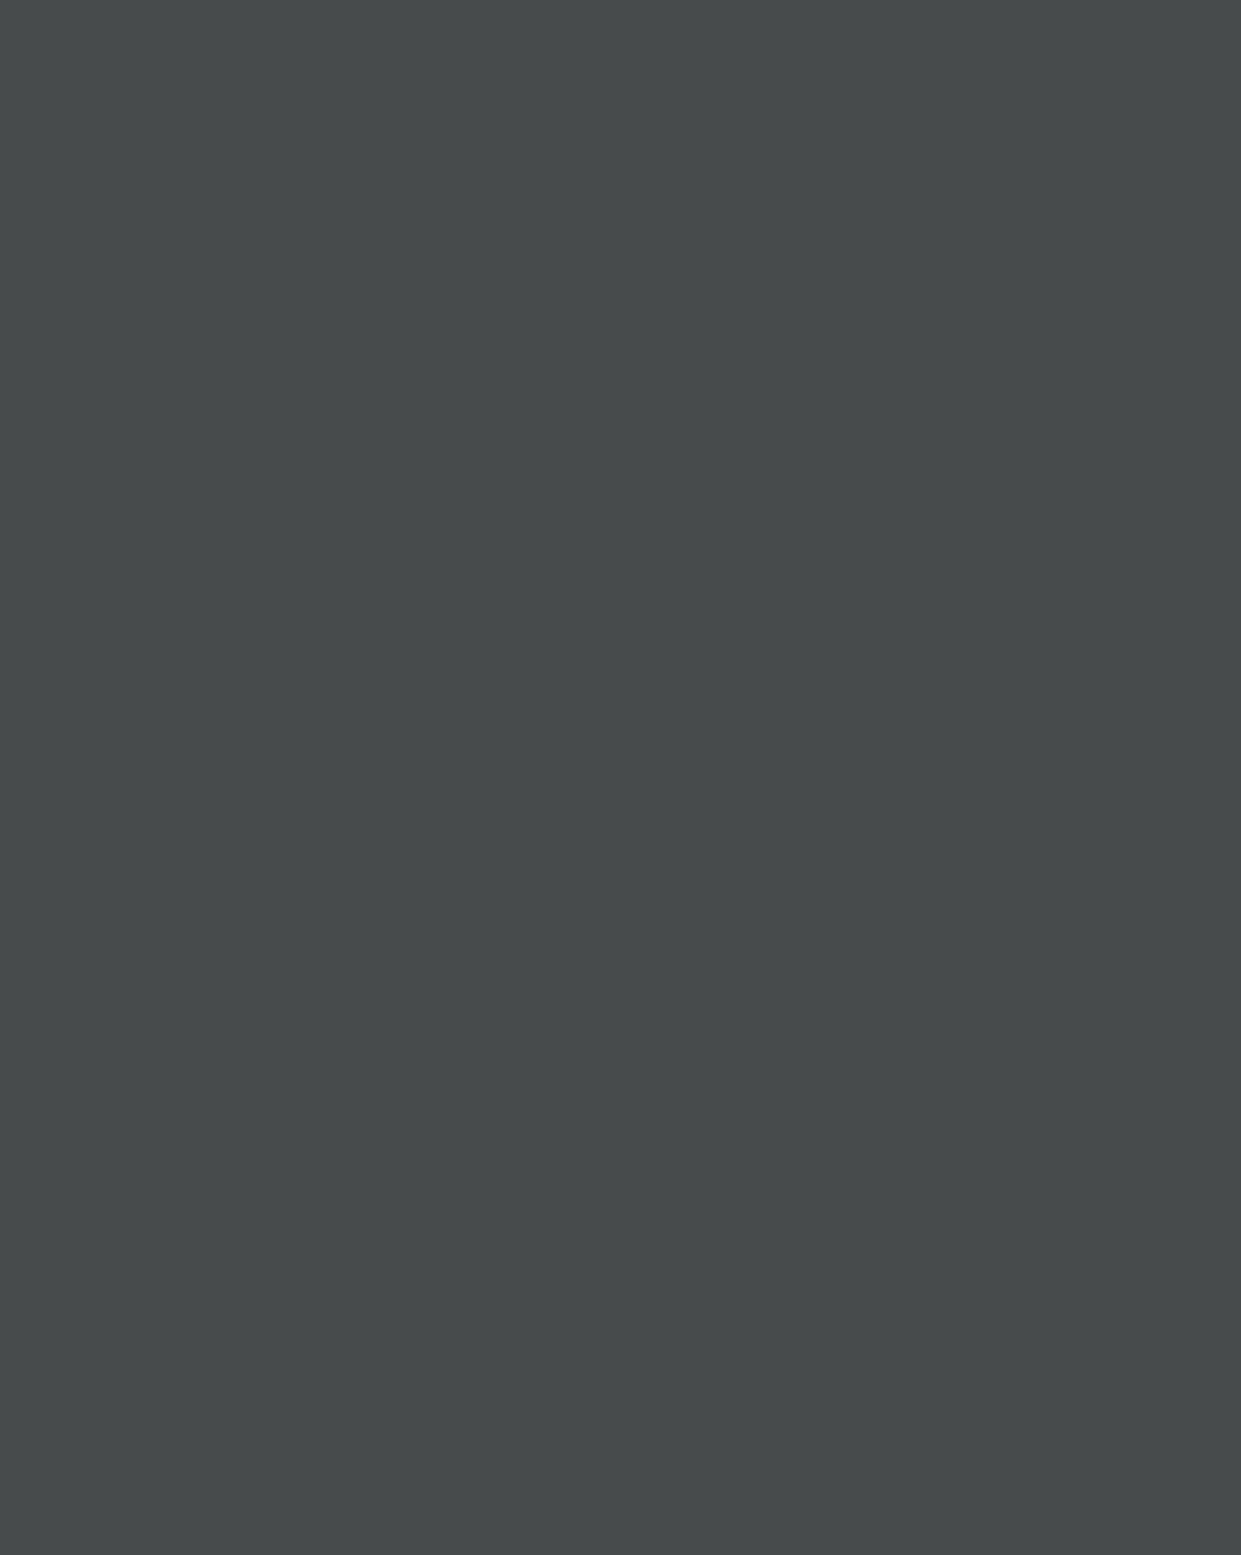 Михаил Врубель. Шестикрылый серафим (Азраил) (фрагмент). 1904. Государственный Русский музей, Санкт-Петербург